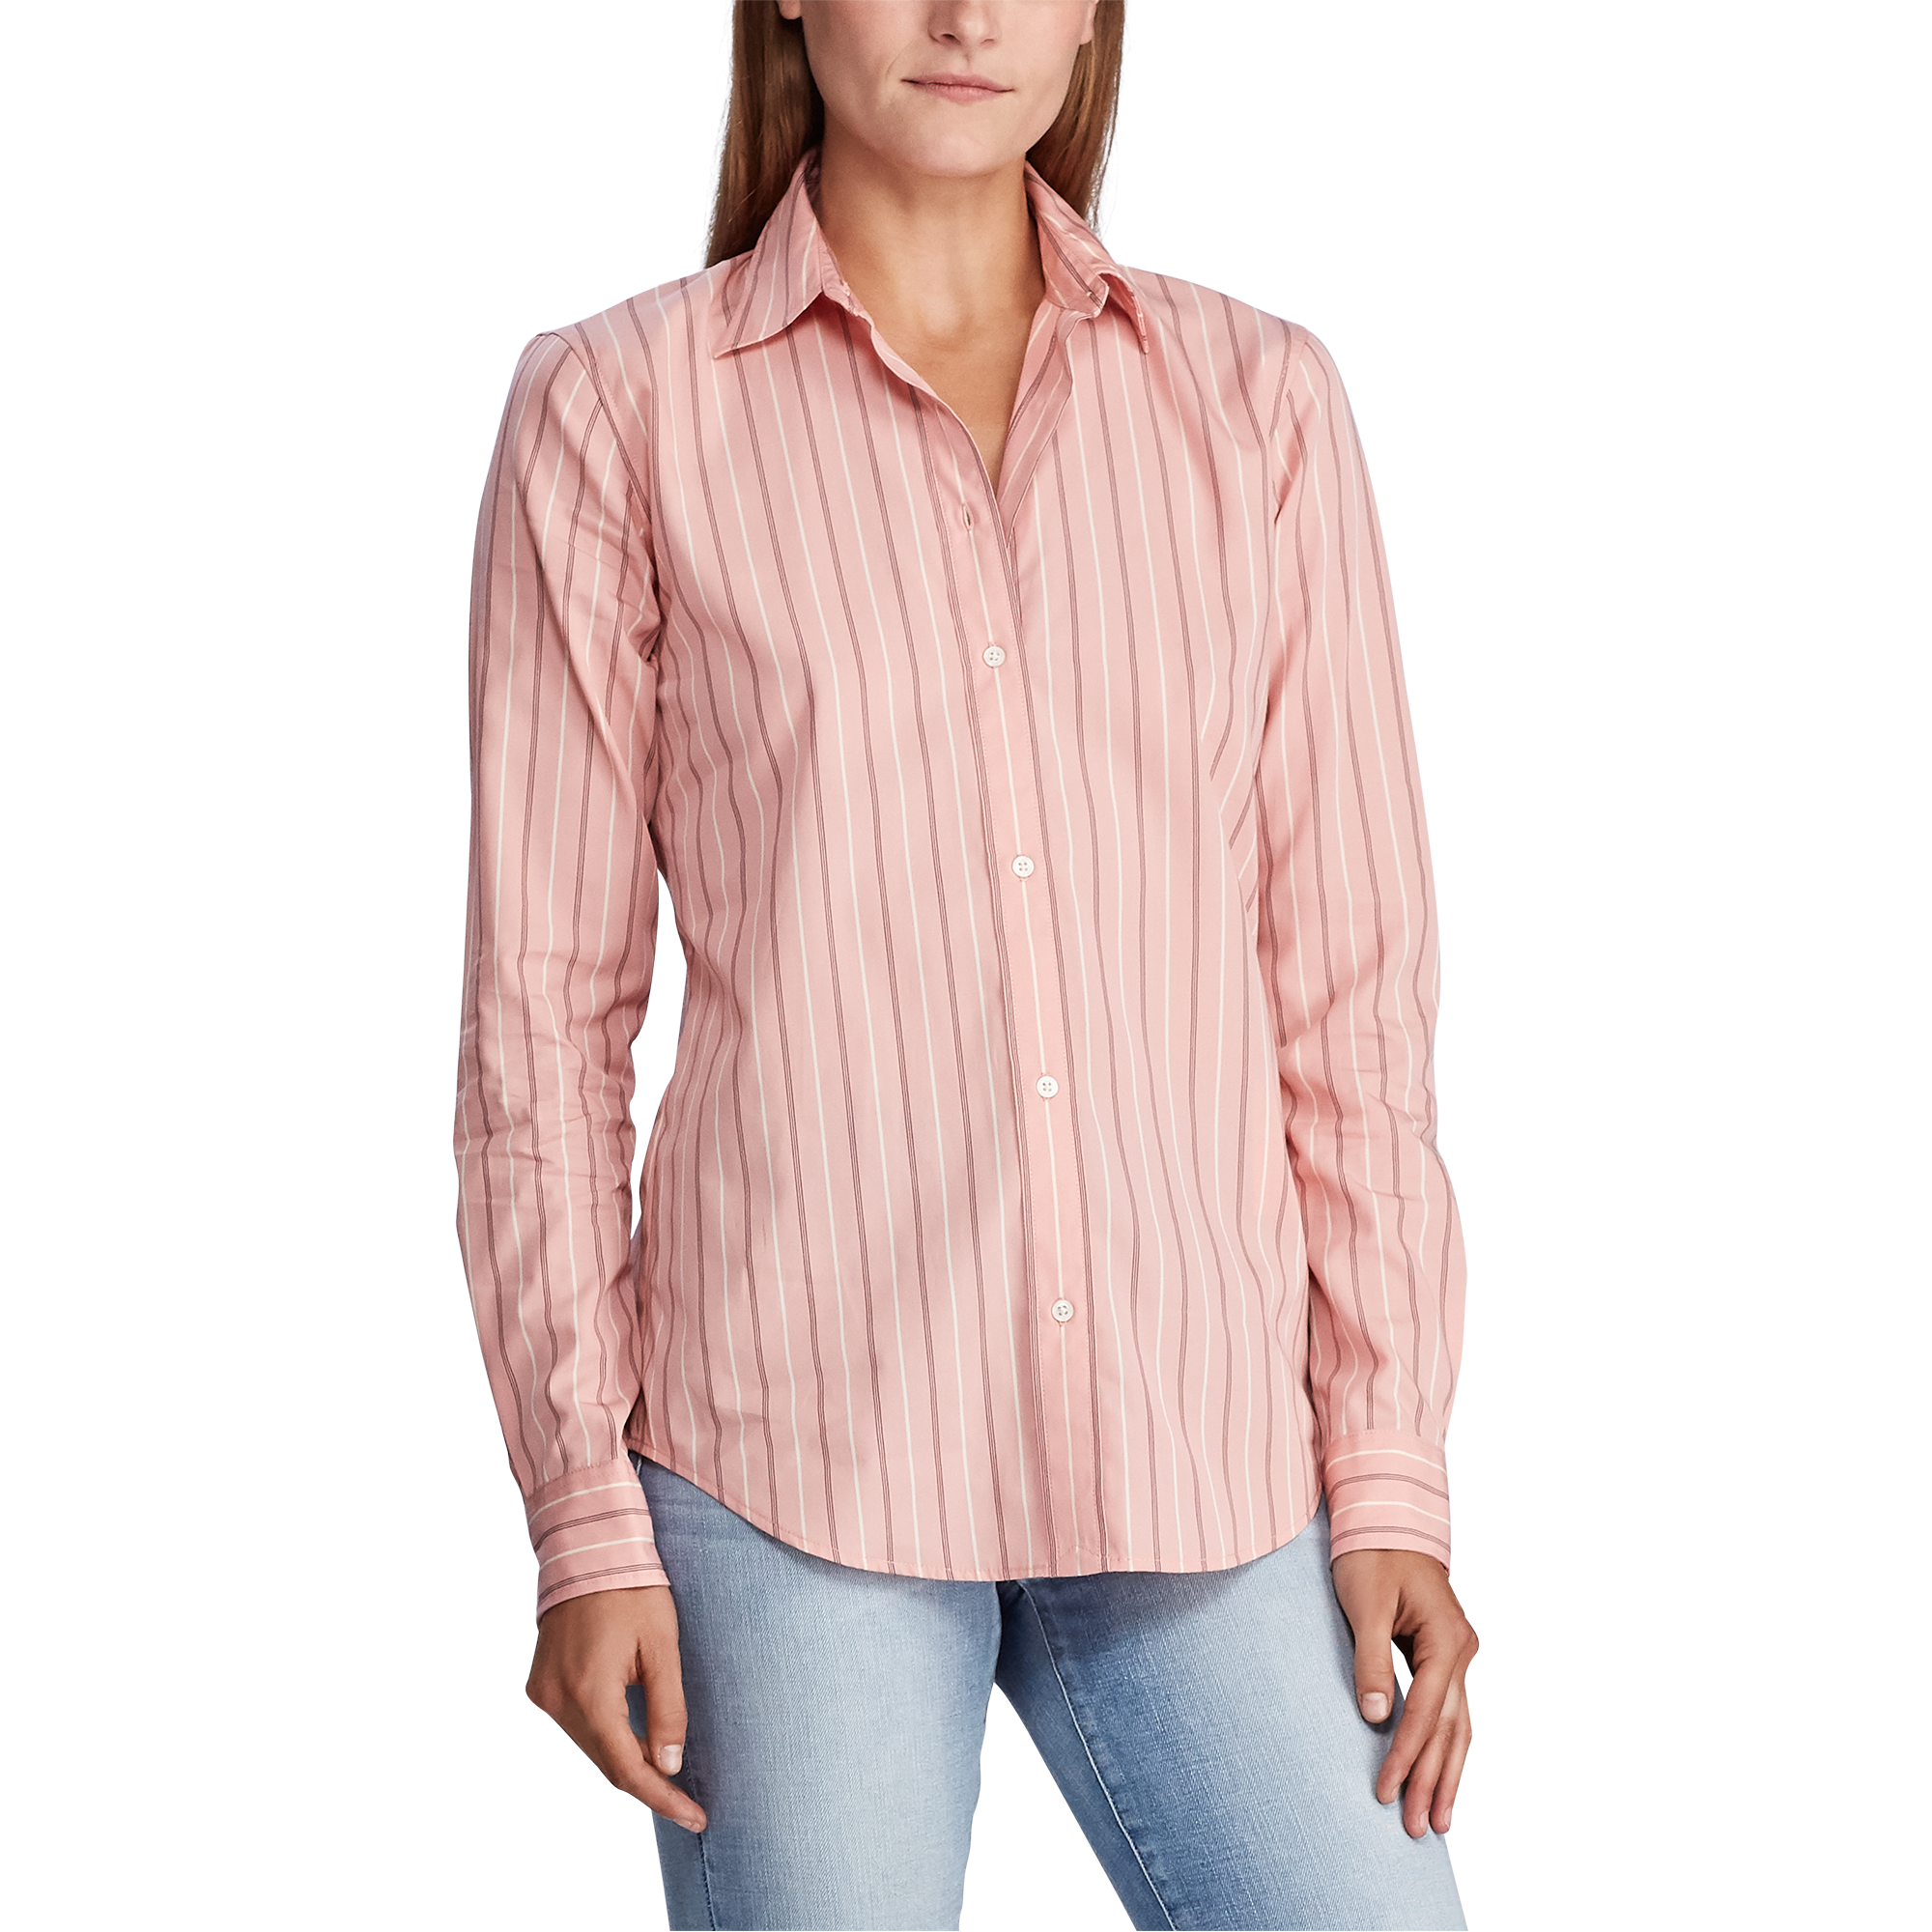 Ralph Lauren Striped Cotton Shirt. 3